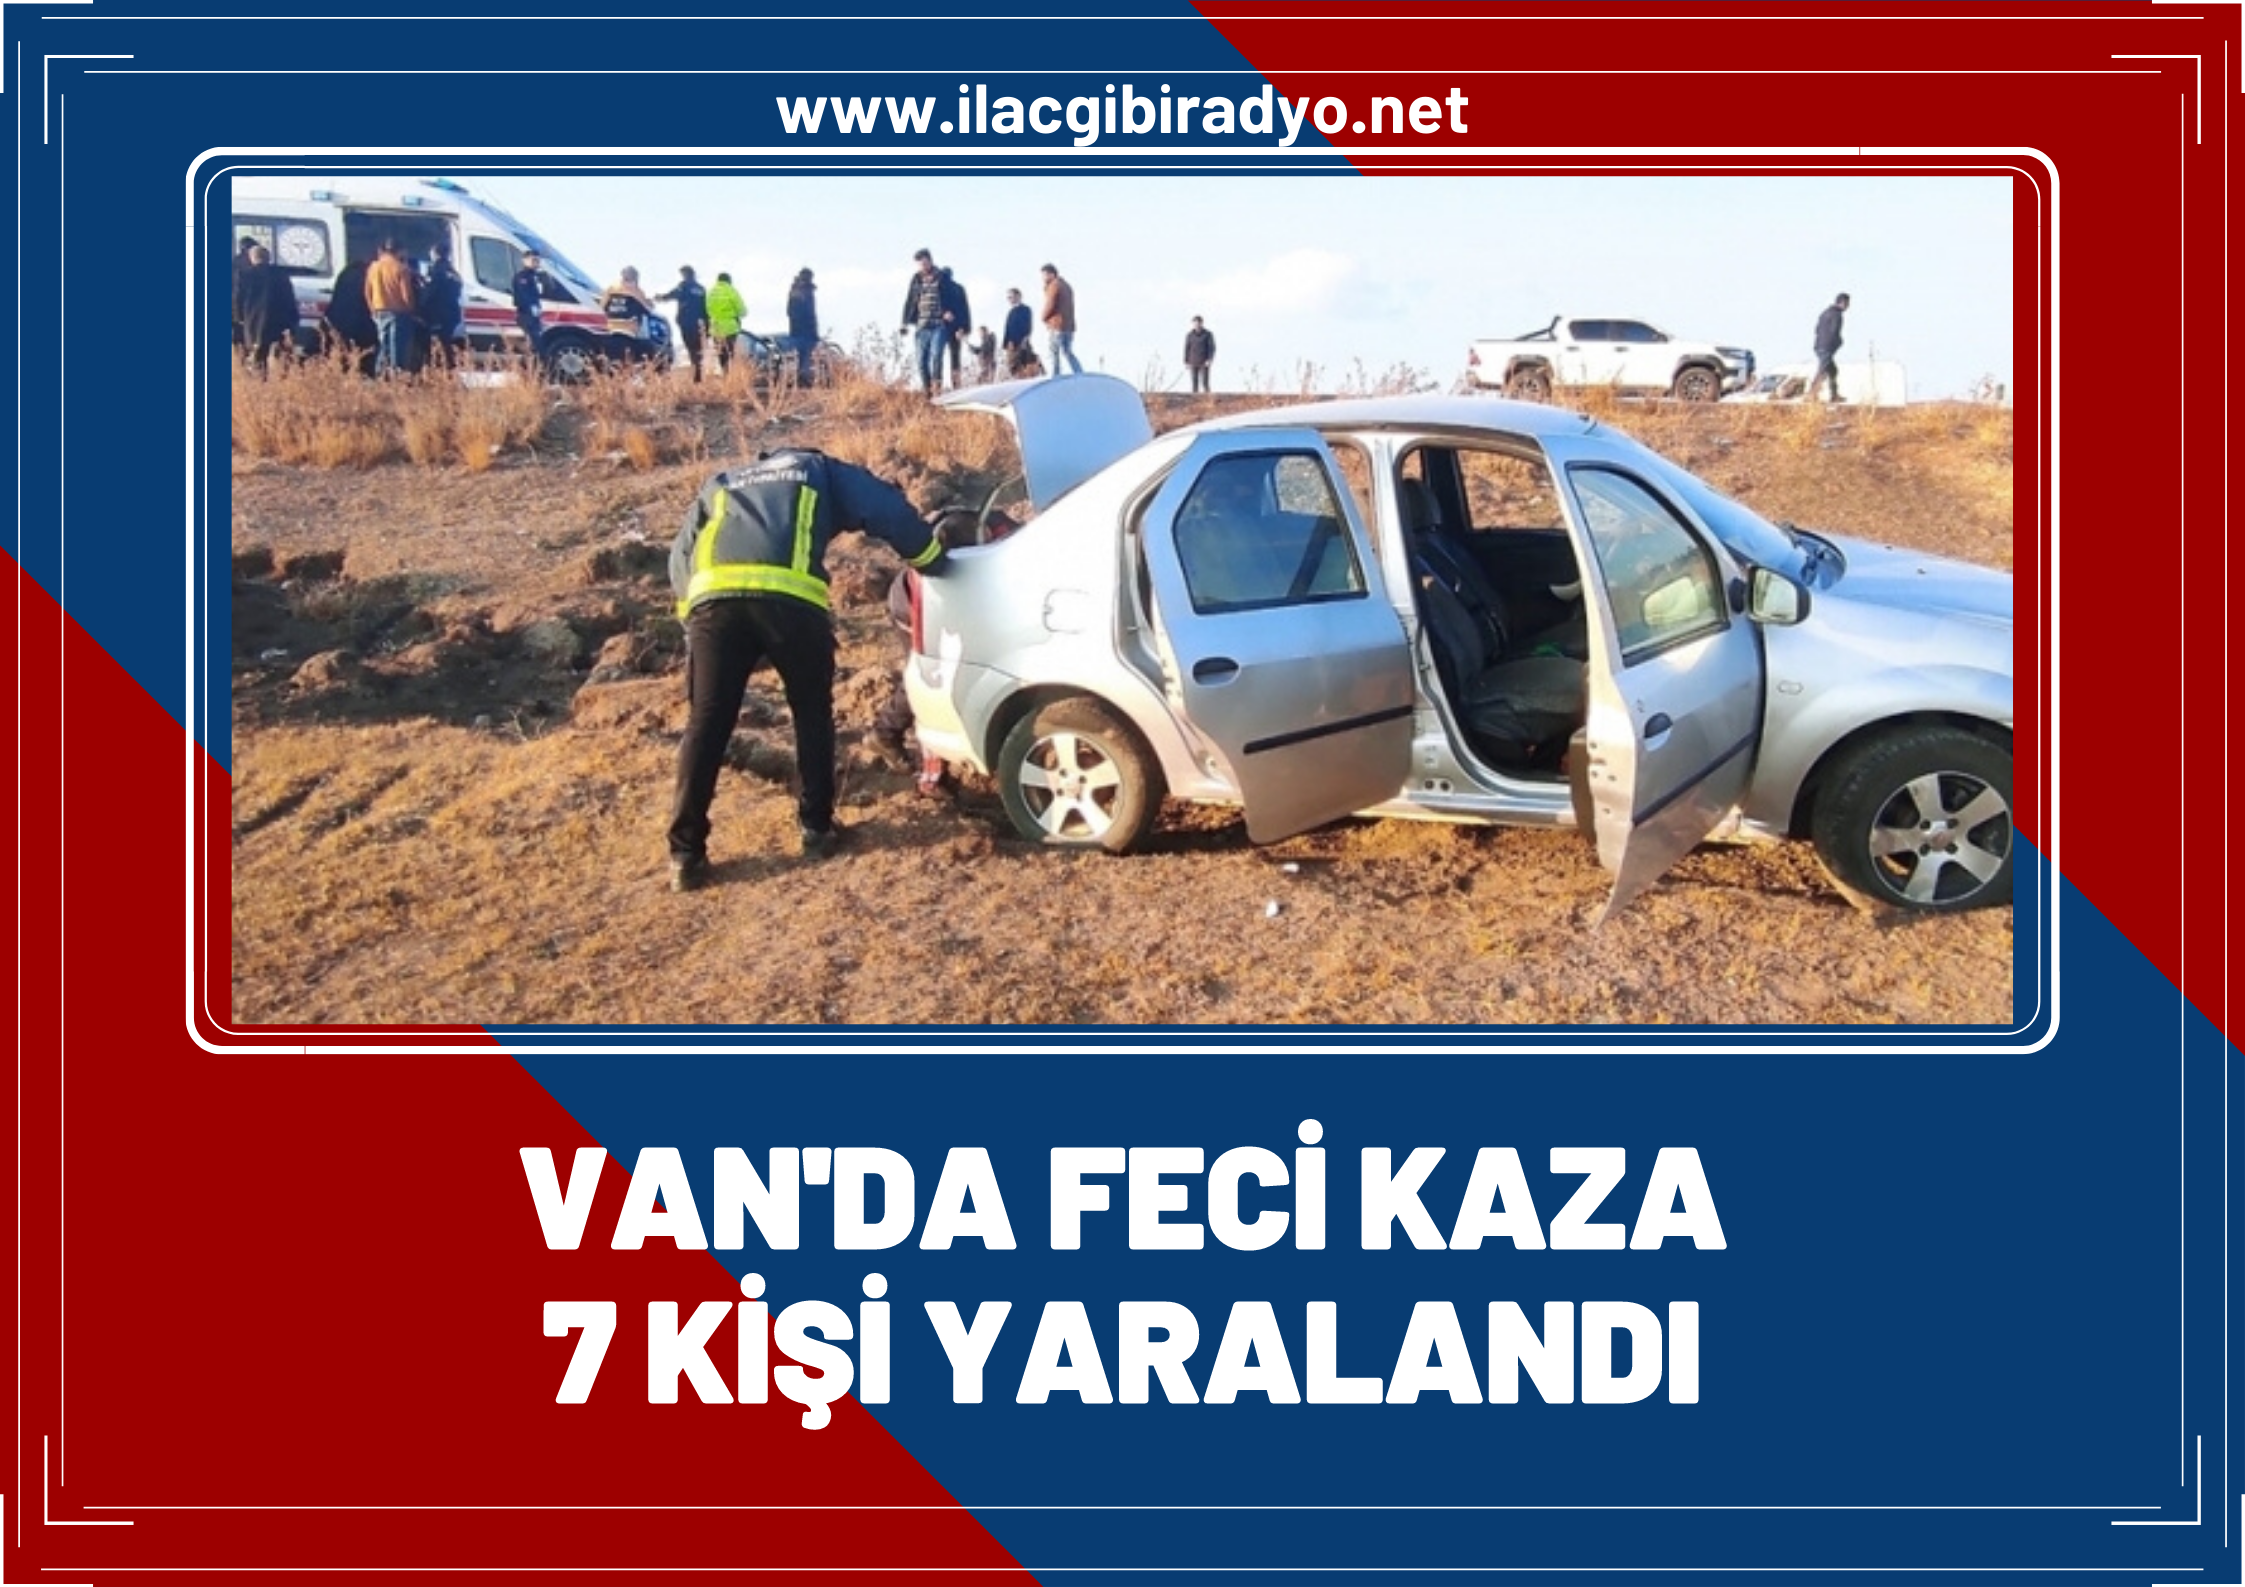 Van'da iki araç çarpıştı: 7 kişi yaralandı!